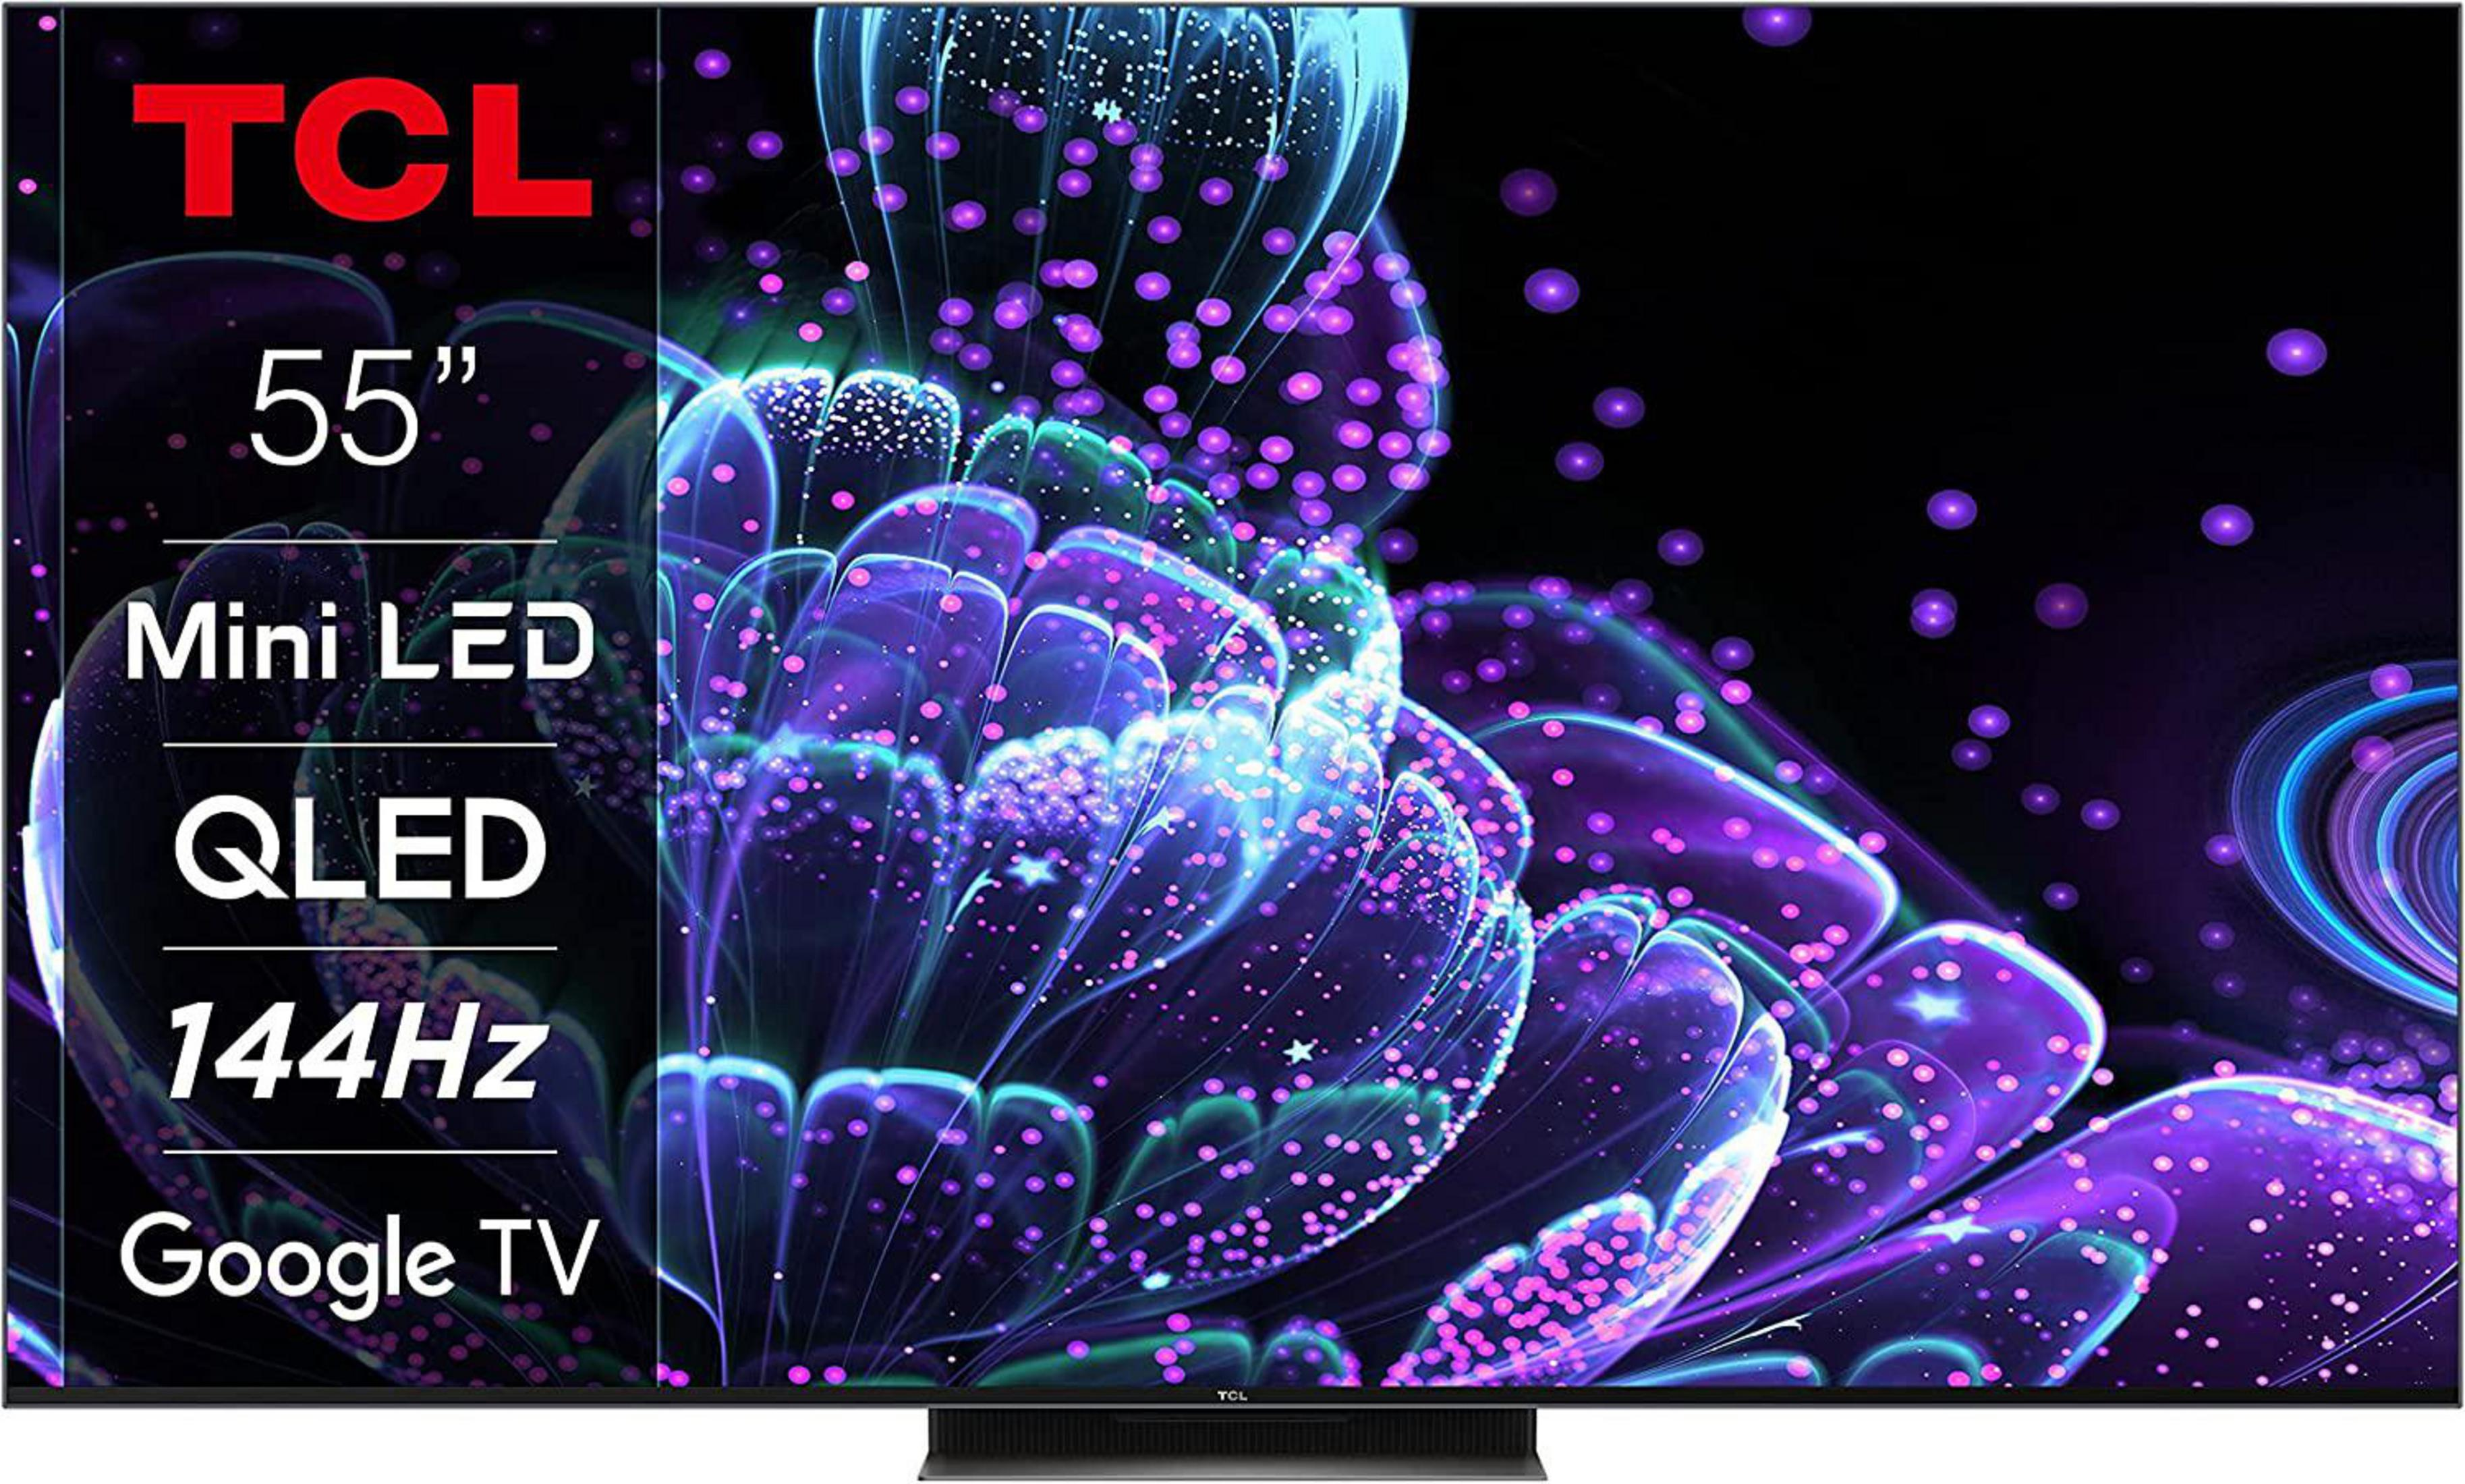 cm, TV) 55 (Flat, 55 C 835 TCL LED Zoll TV 4K, / UHD 139 Google